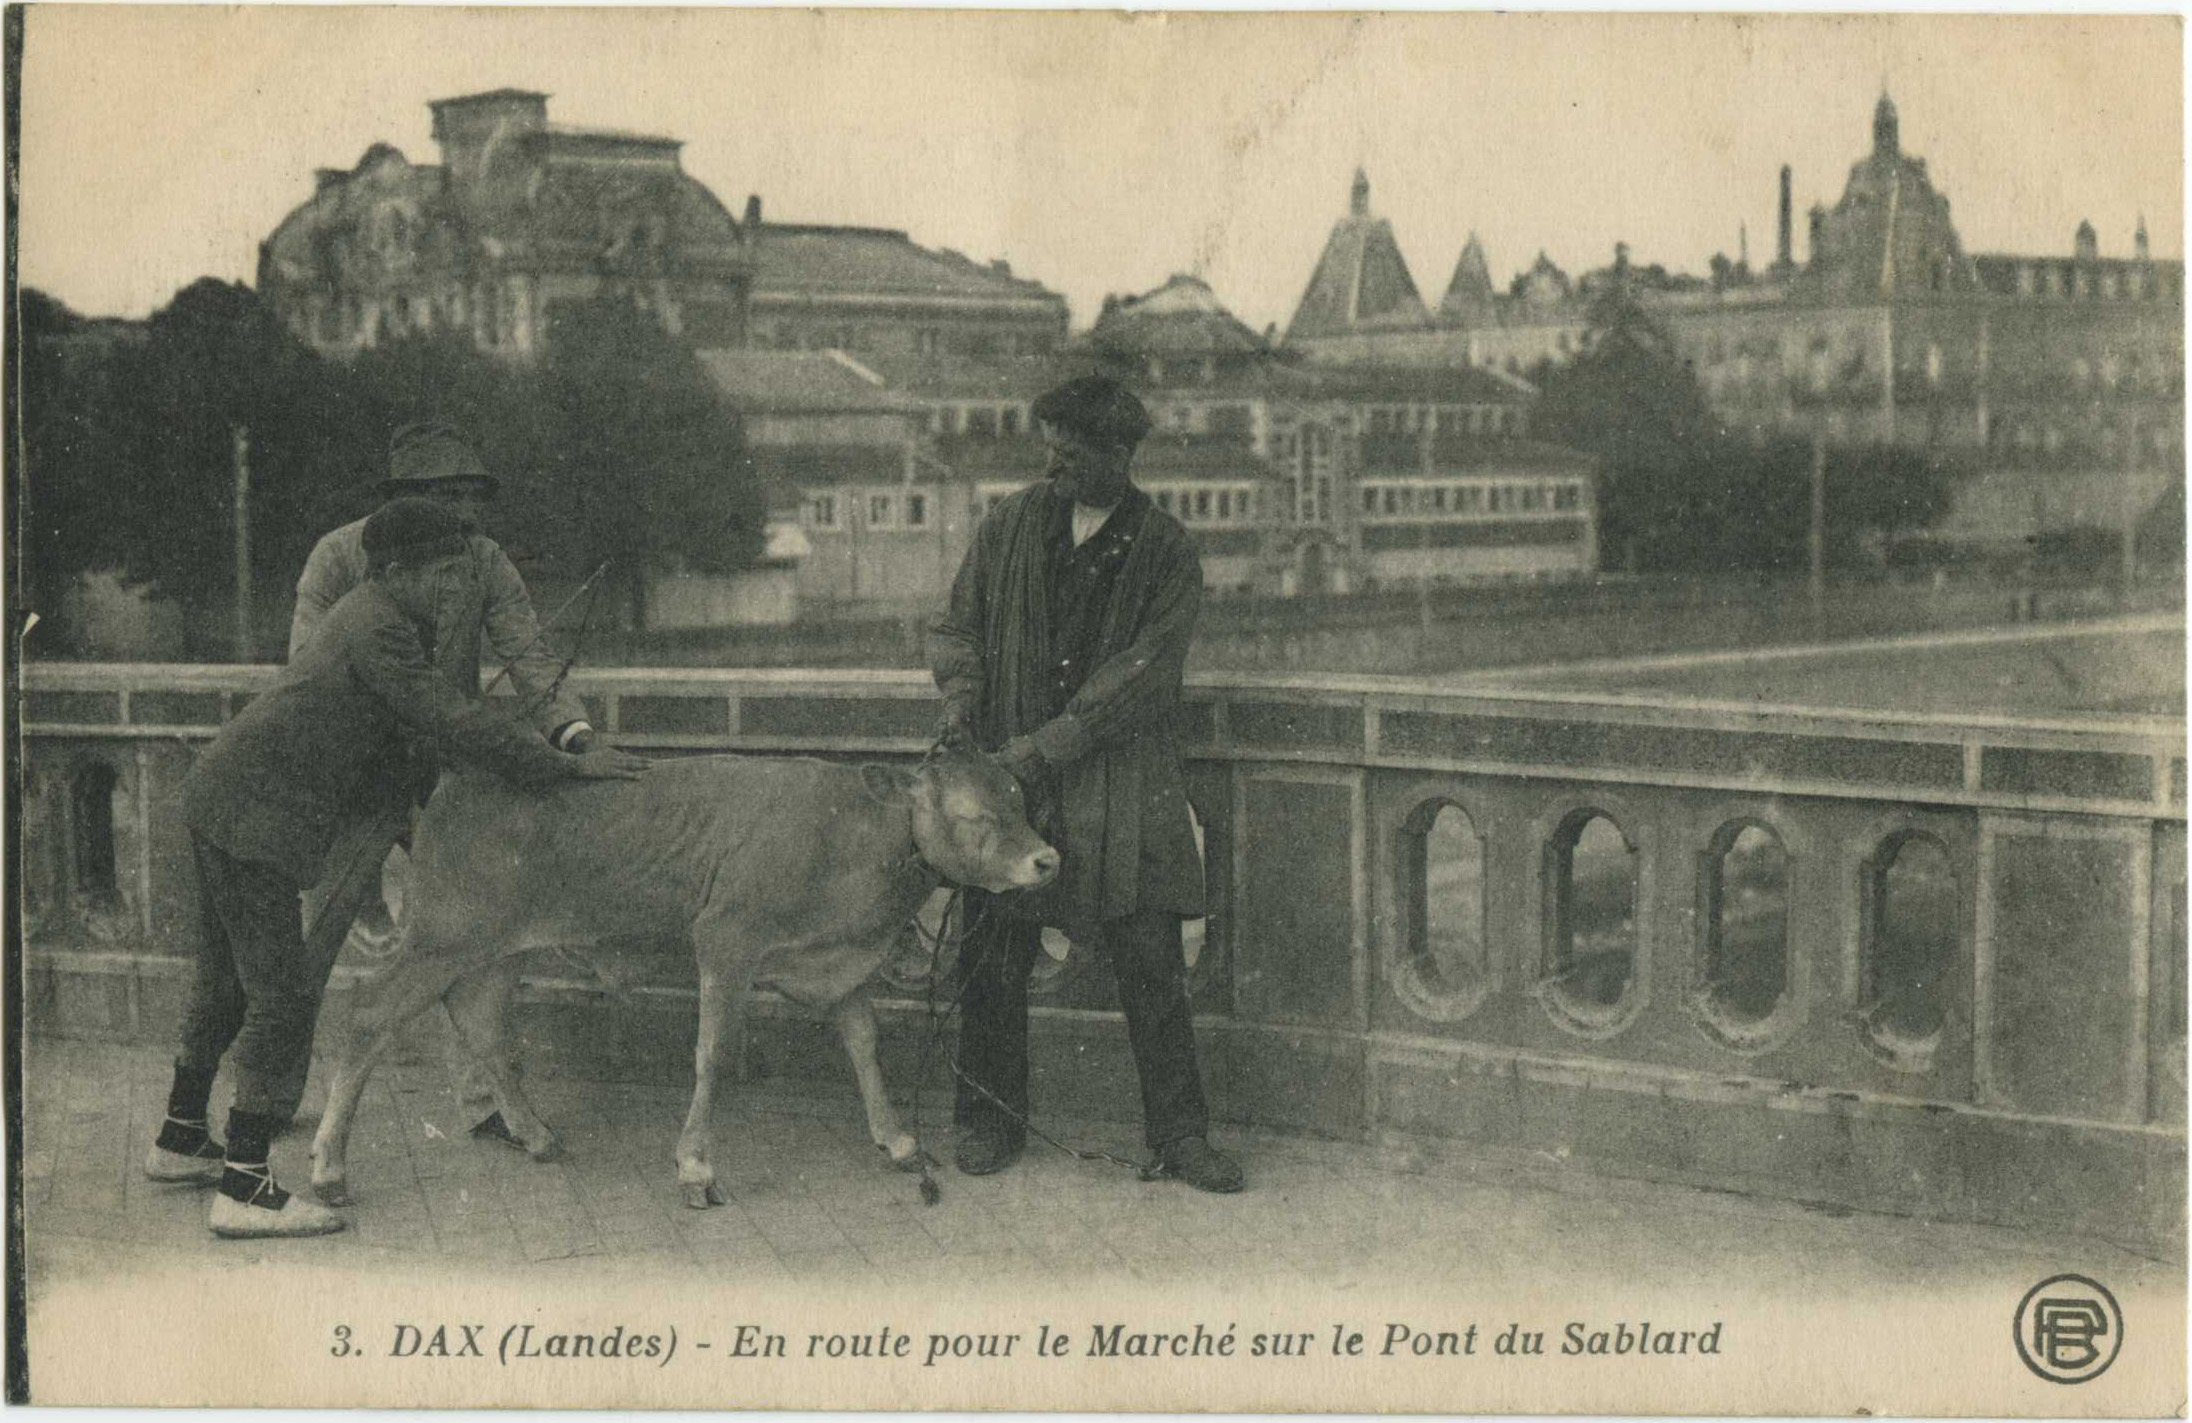 Dax - En route pour le Marché sur le Pont du Sablard